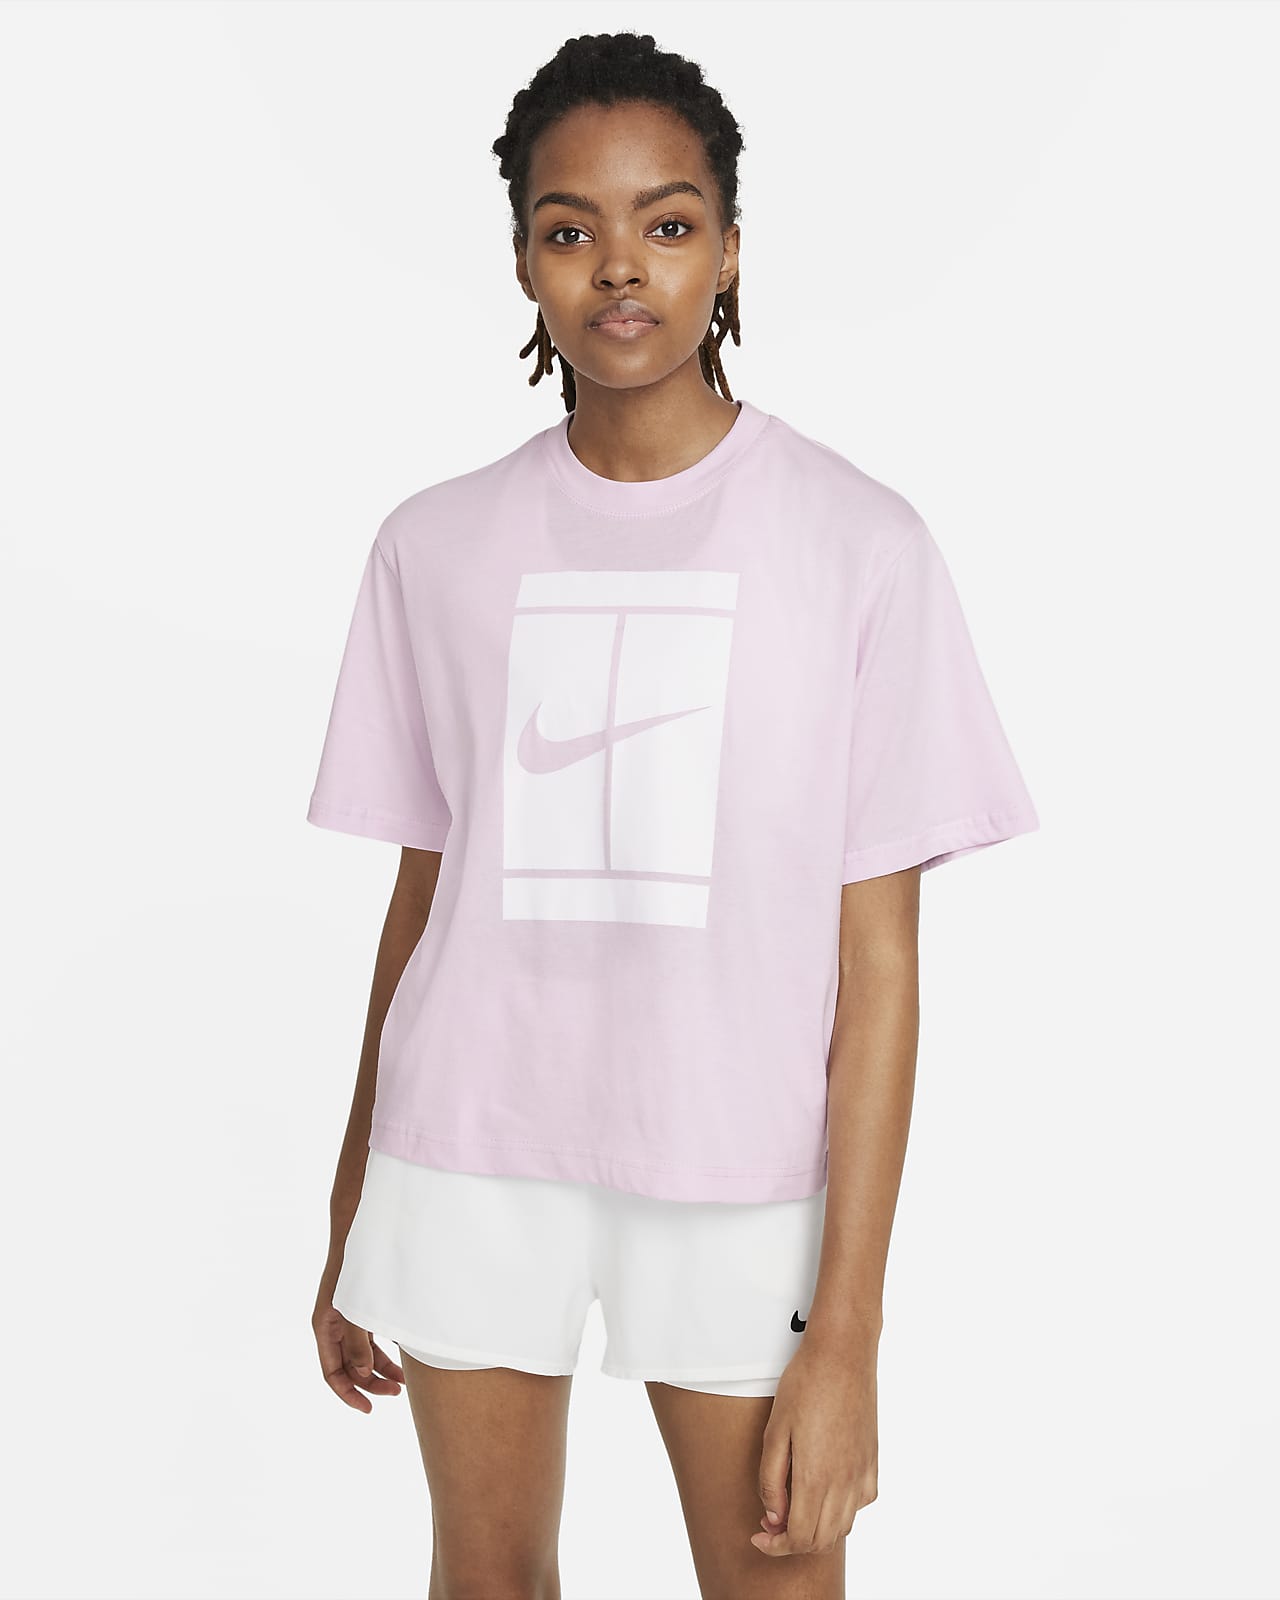 Nike T Shirt Damen Pink : Nike T Shirt Schwarz Damen Cc70b8 / Find the ...